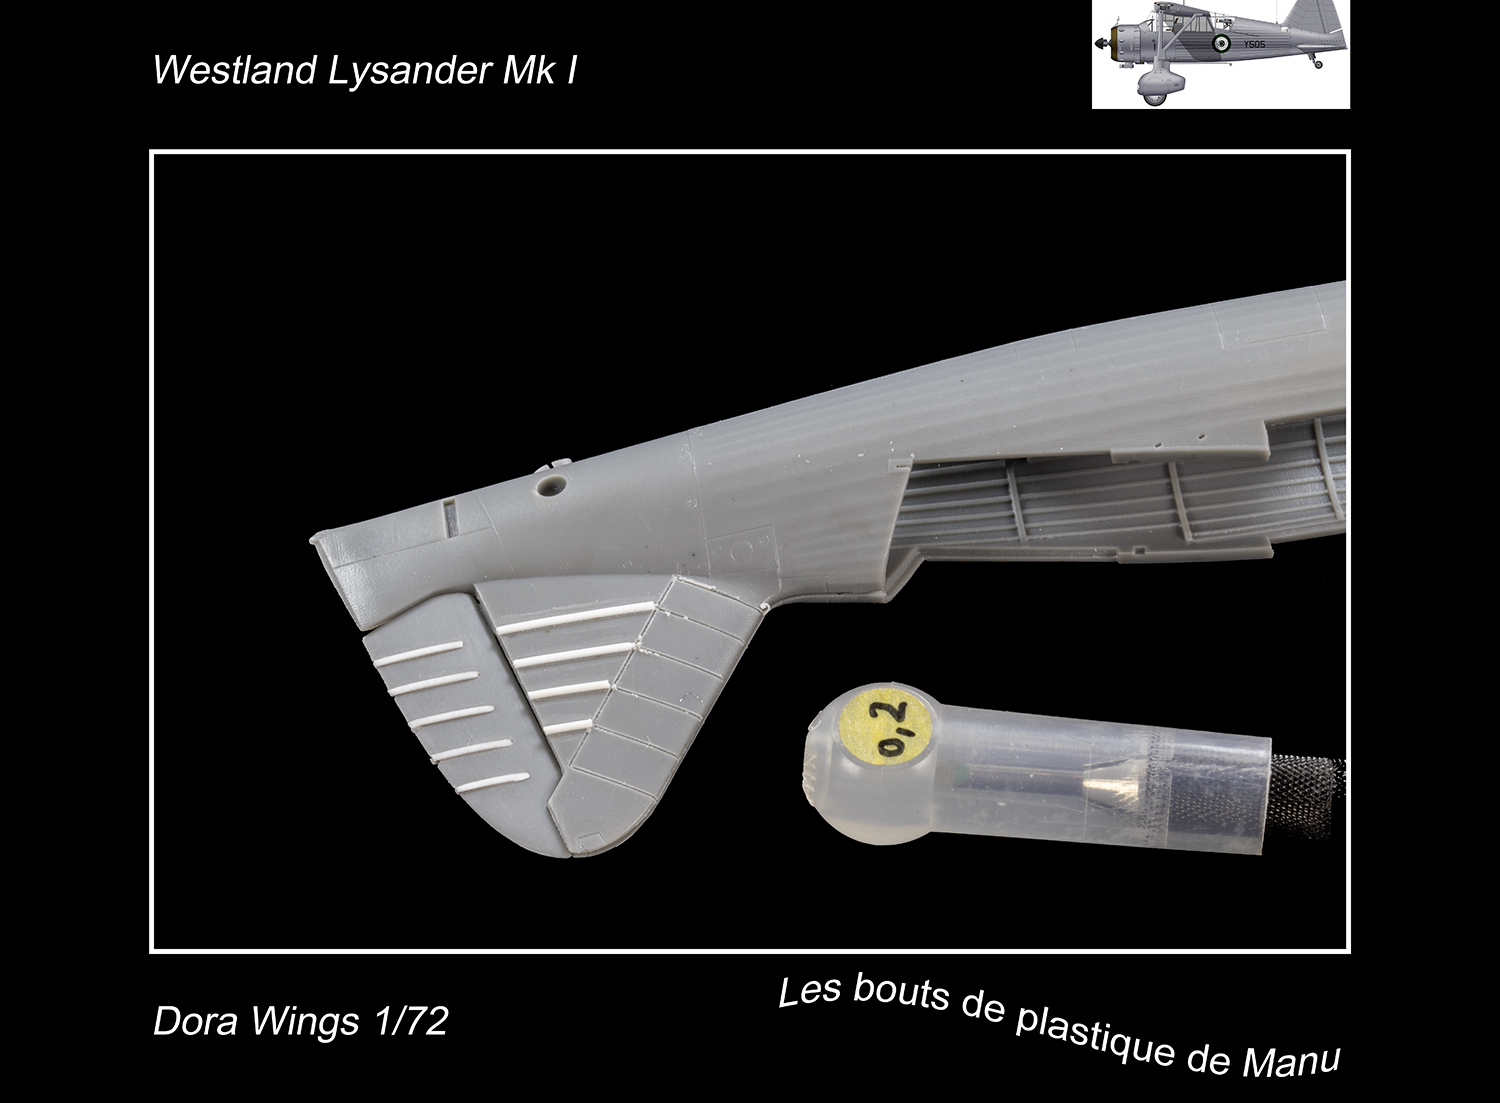 [Dora Wings] Westland Lysander Mk I - Je préfère en rire... 8j5u